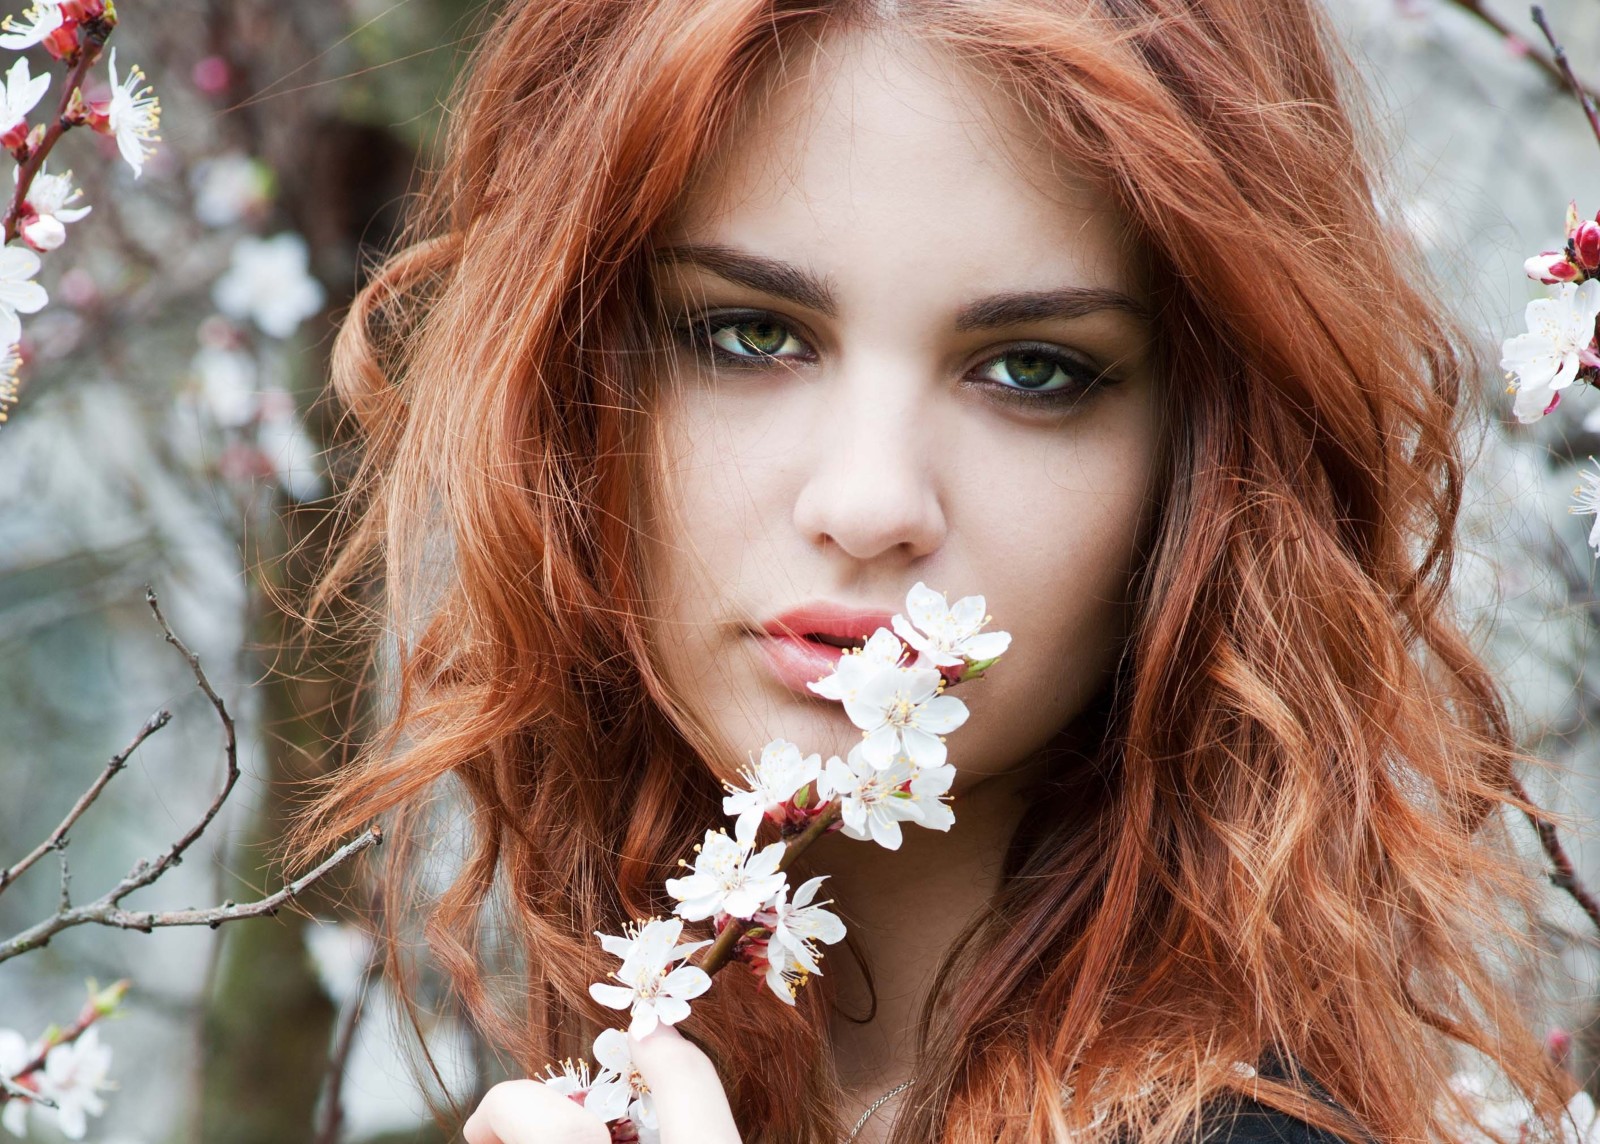 nhìn, con gái, mùa xuân, tóc, Cành cây, mắt xanh